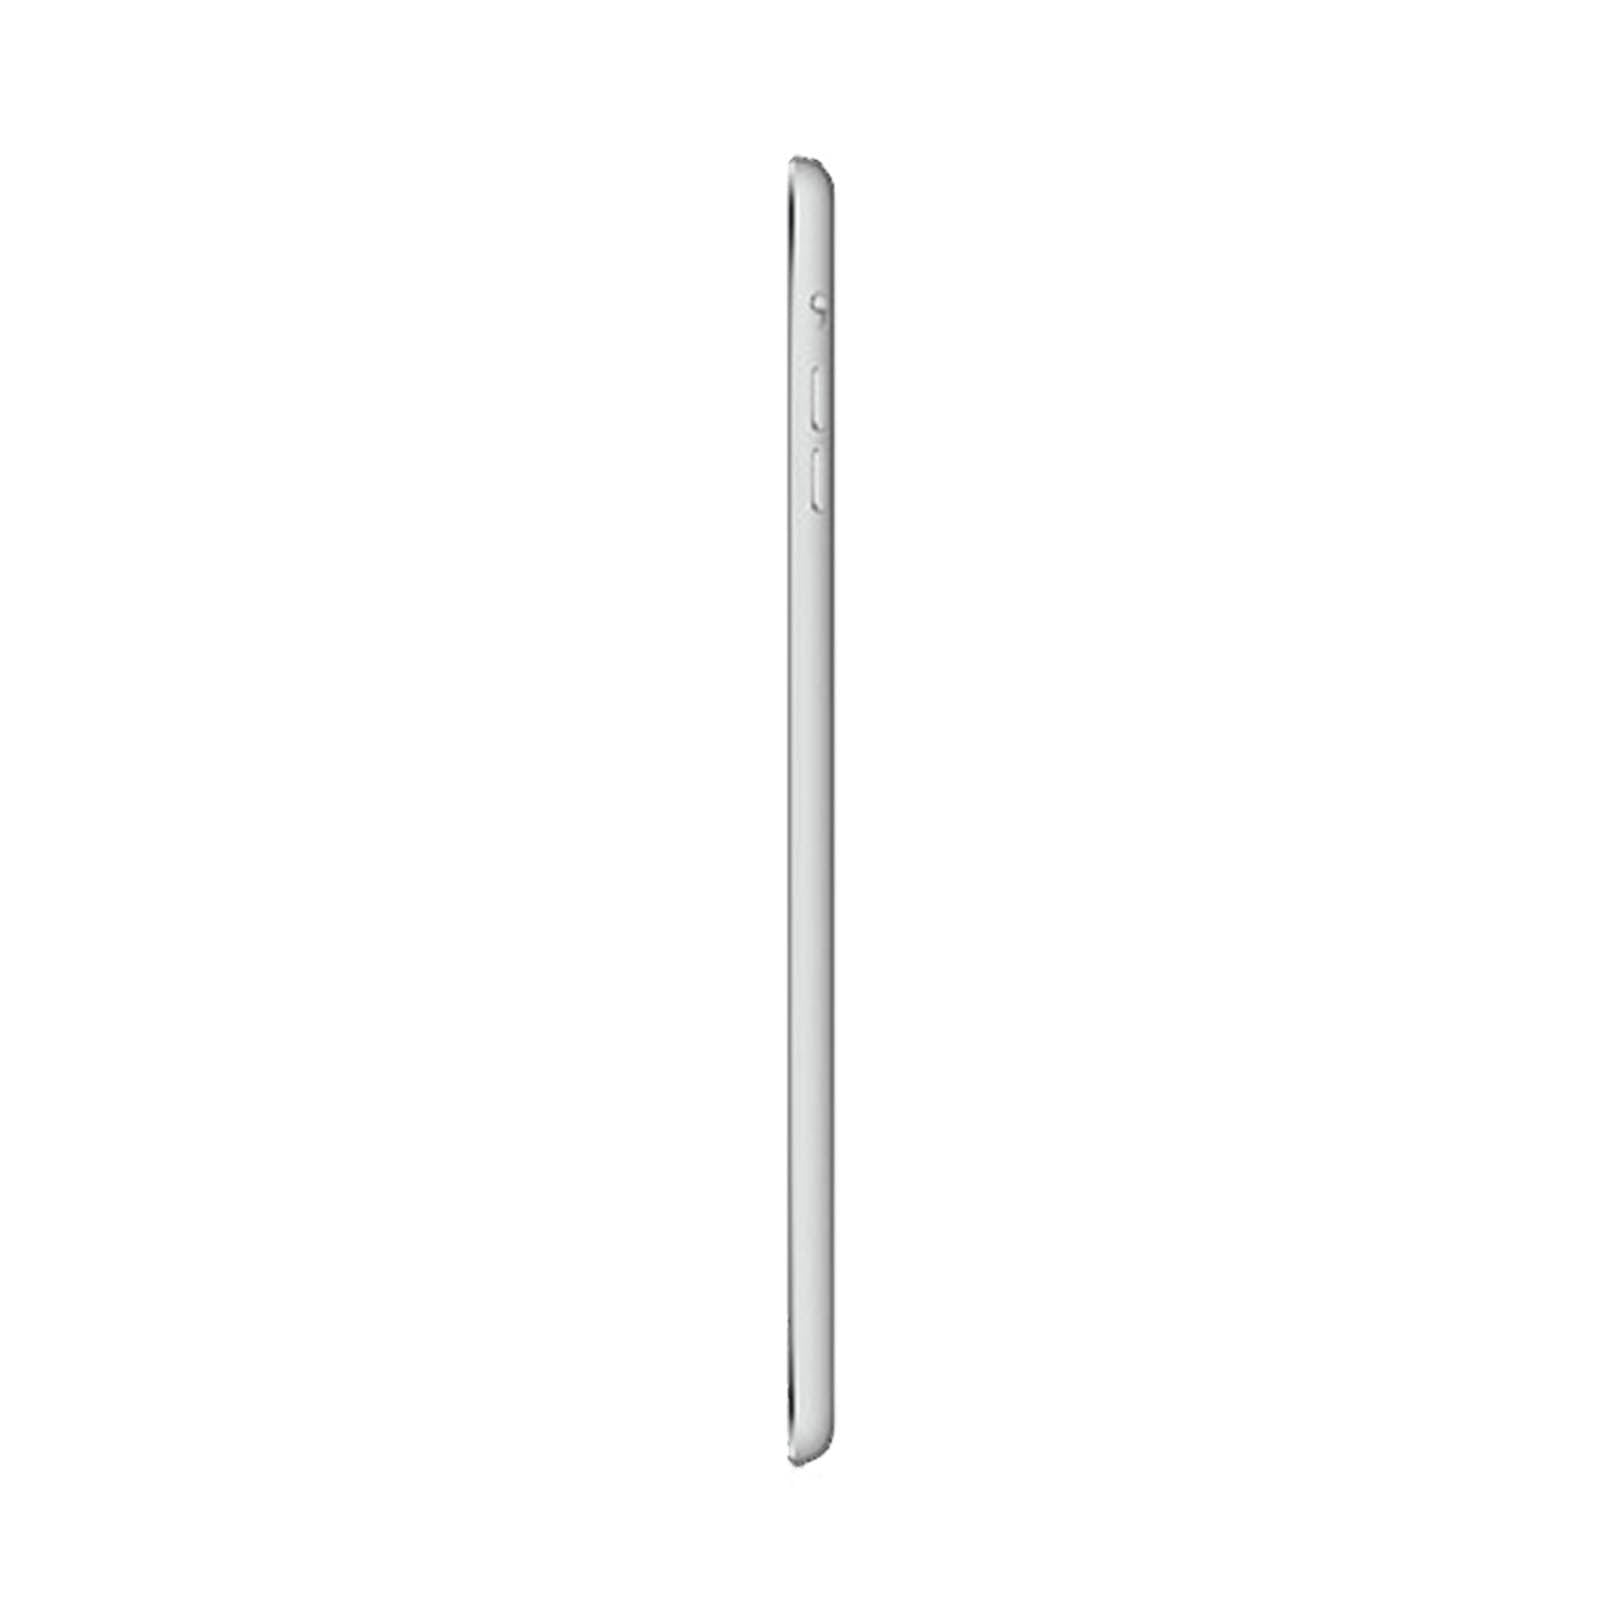 iPad Mini 2 128GB WiFi -Silver -Very Good